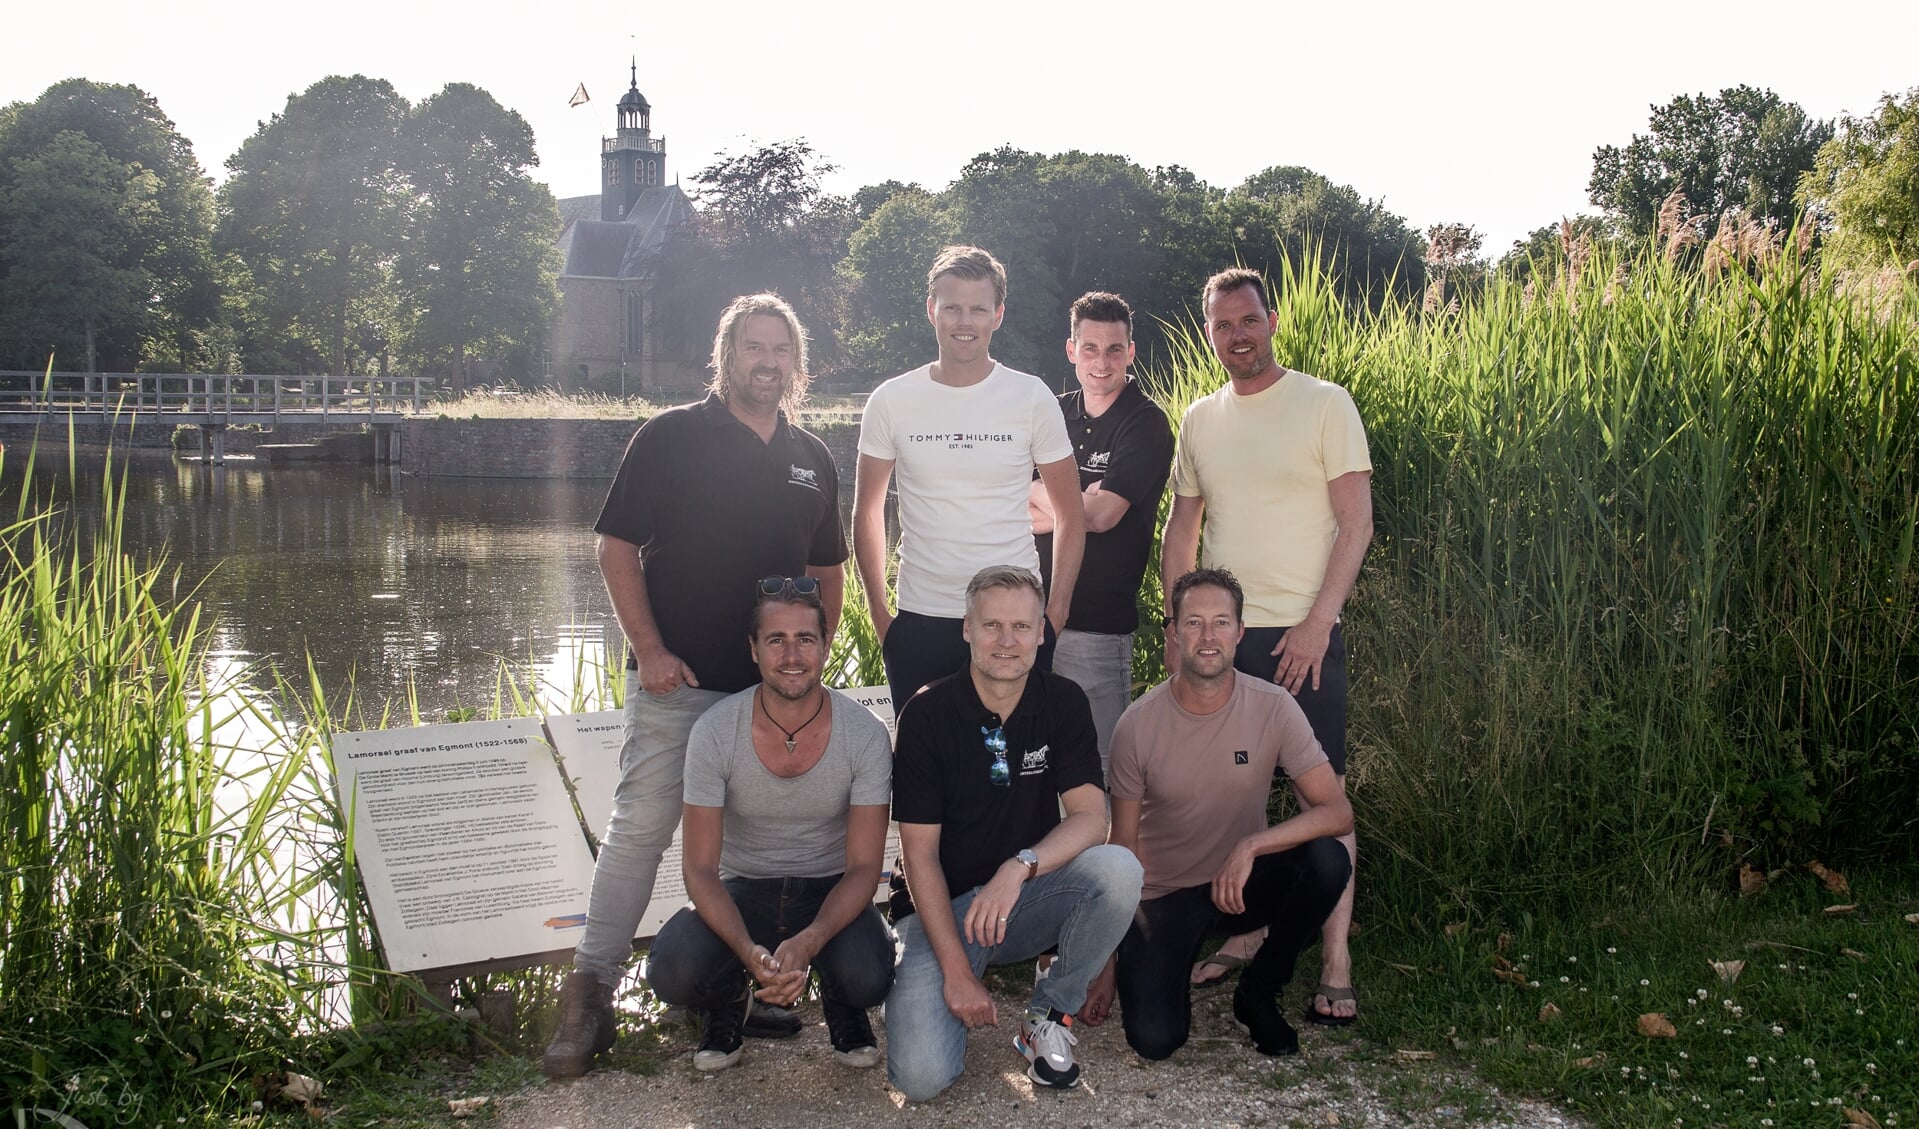 Het team van het Zomerfestival Egmond aan den Hoef, staand v.l.n.r. Joost van Dam, Ton Tervoort, Gijs de Waal en Hidde van der Pol, Gehurkt v.l.n.r. Kevin Beers, Menno Levering en Tom Valkering.